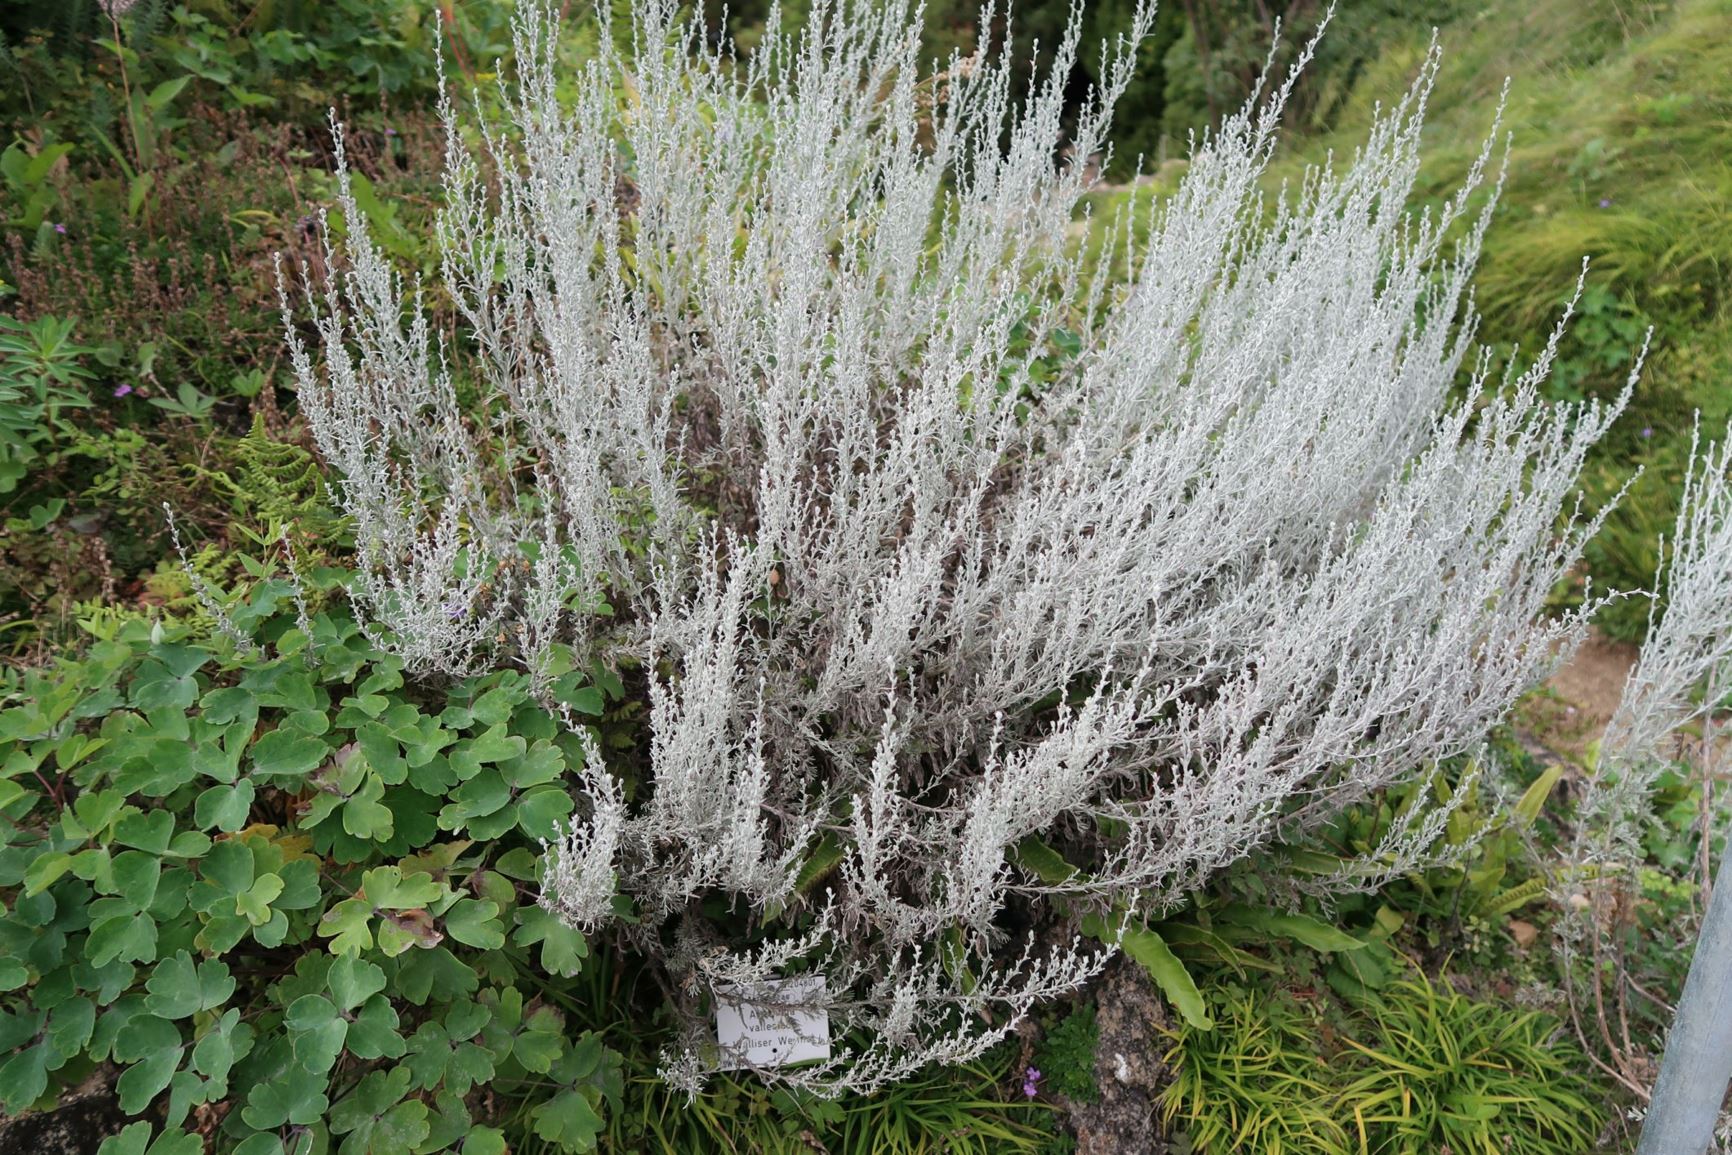 Artemisia vallesiaca - Walliser Wermut, Valais Wormwood